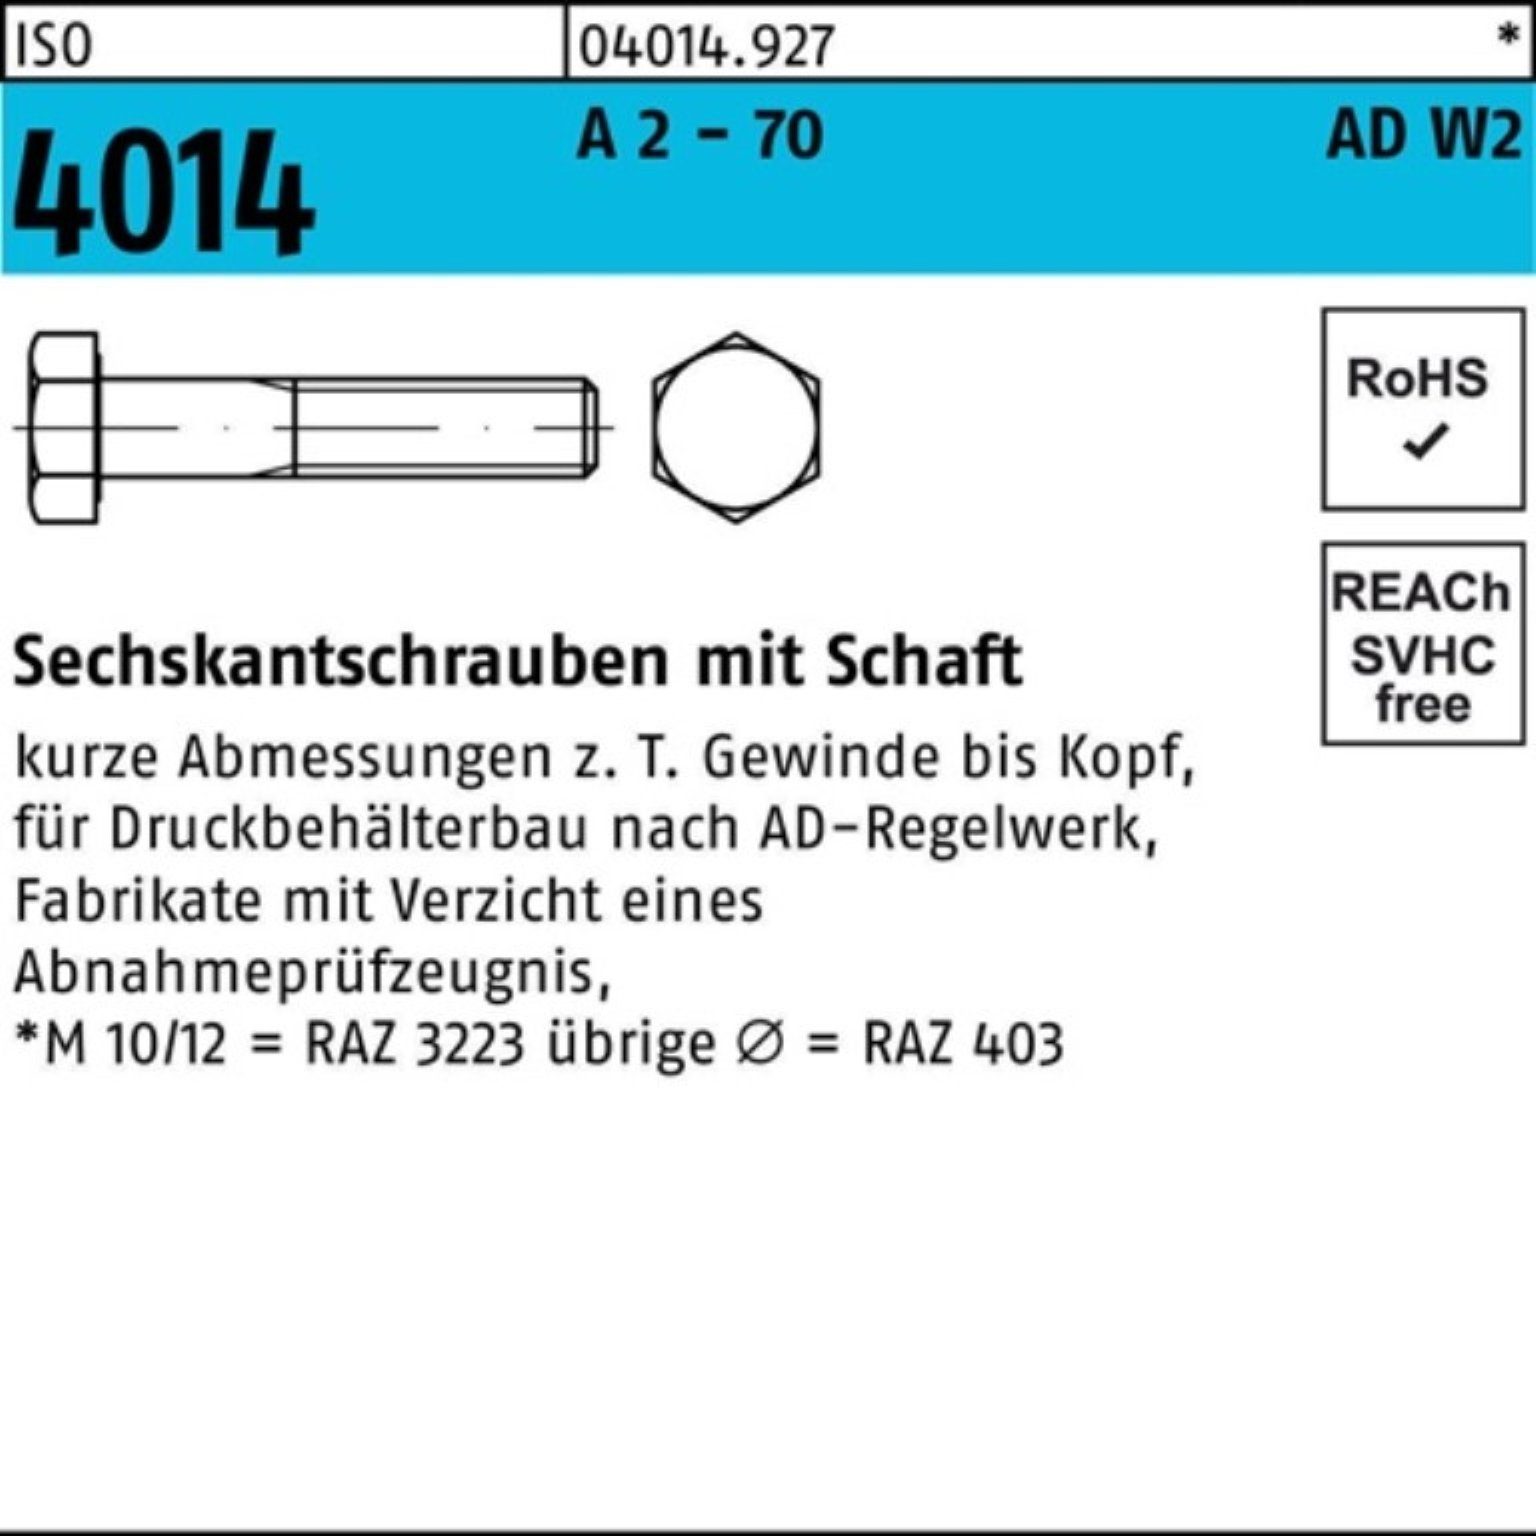 A AD-W2 Bufab Pack 2 75 25 - Sechskantschraube 100er 4014 ISO 70 Sechskantschraube Schaft M16x